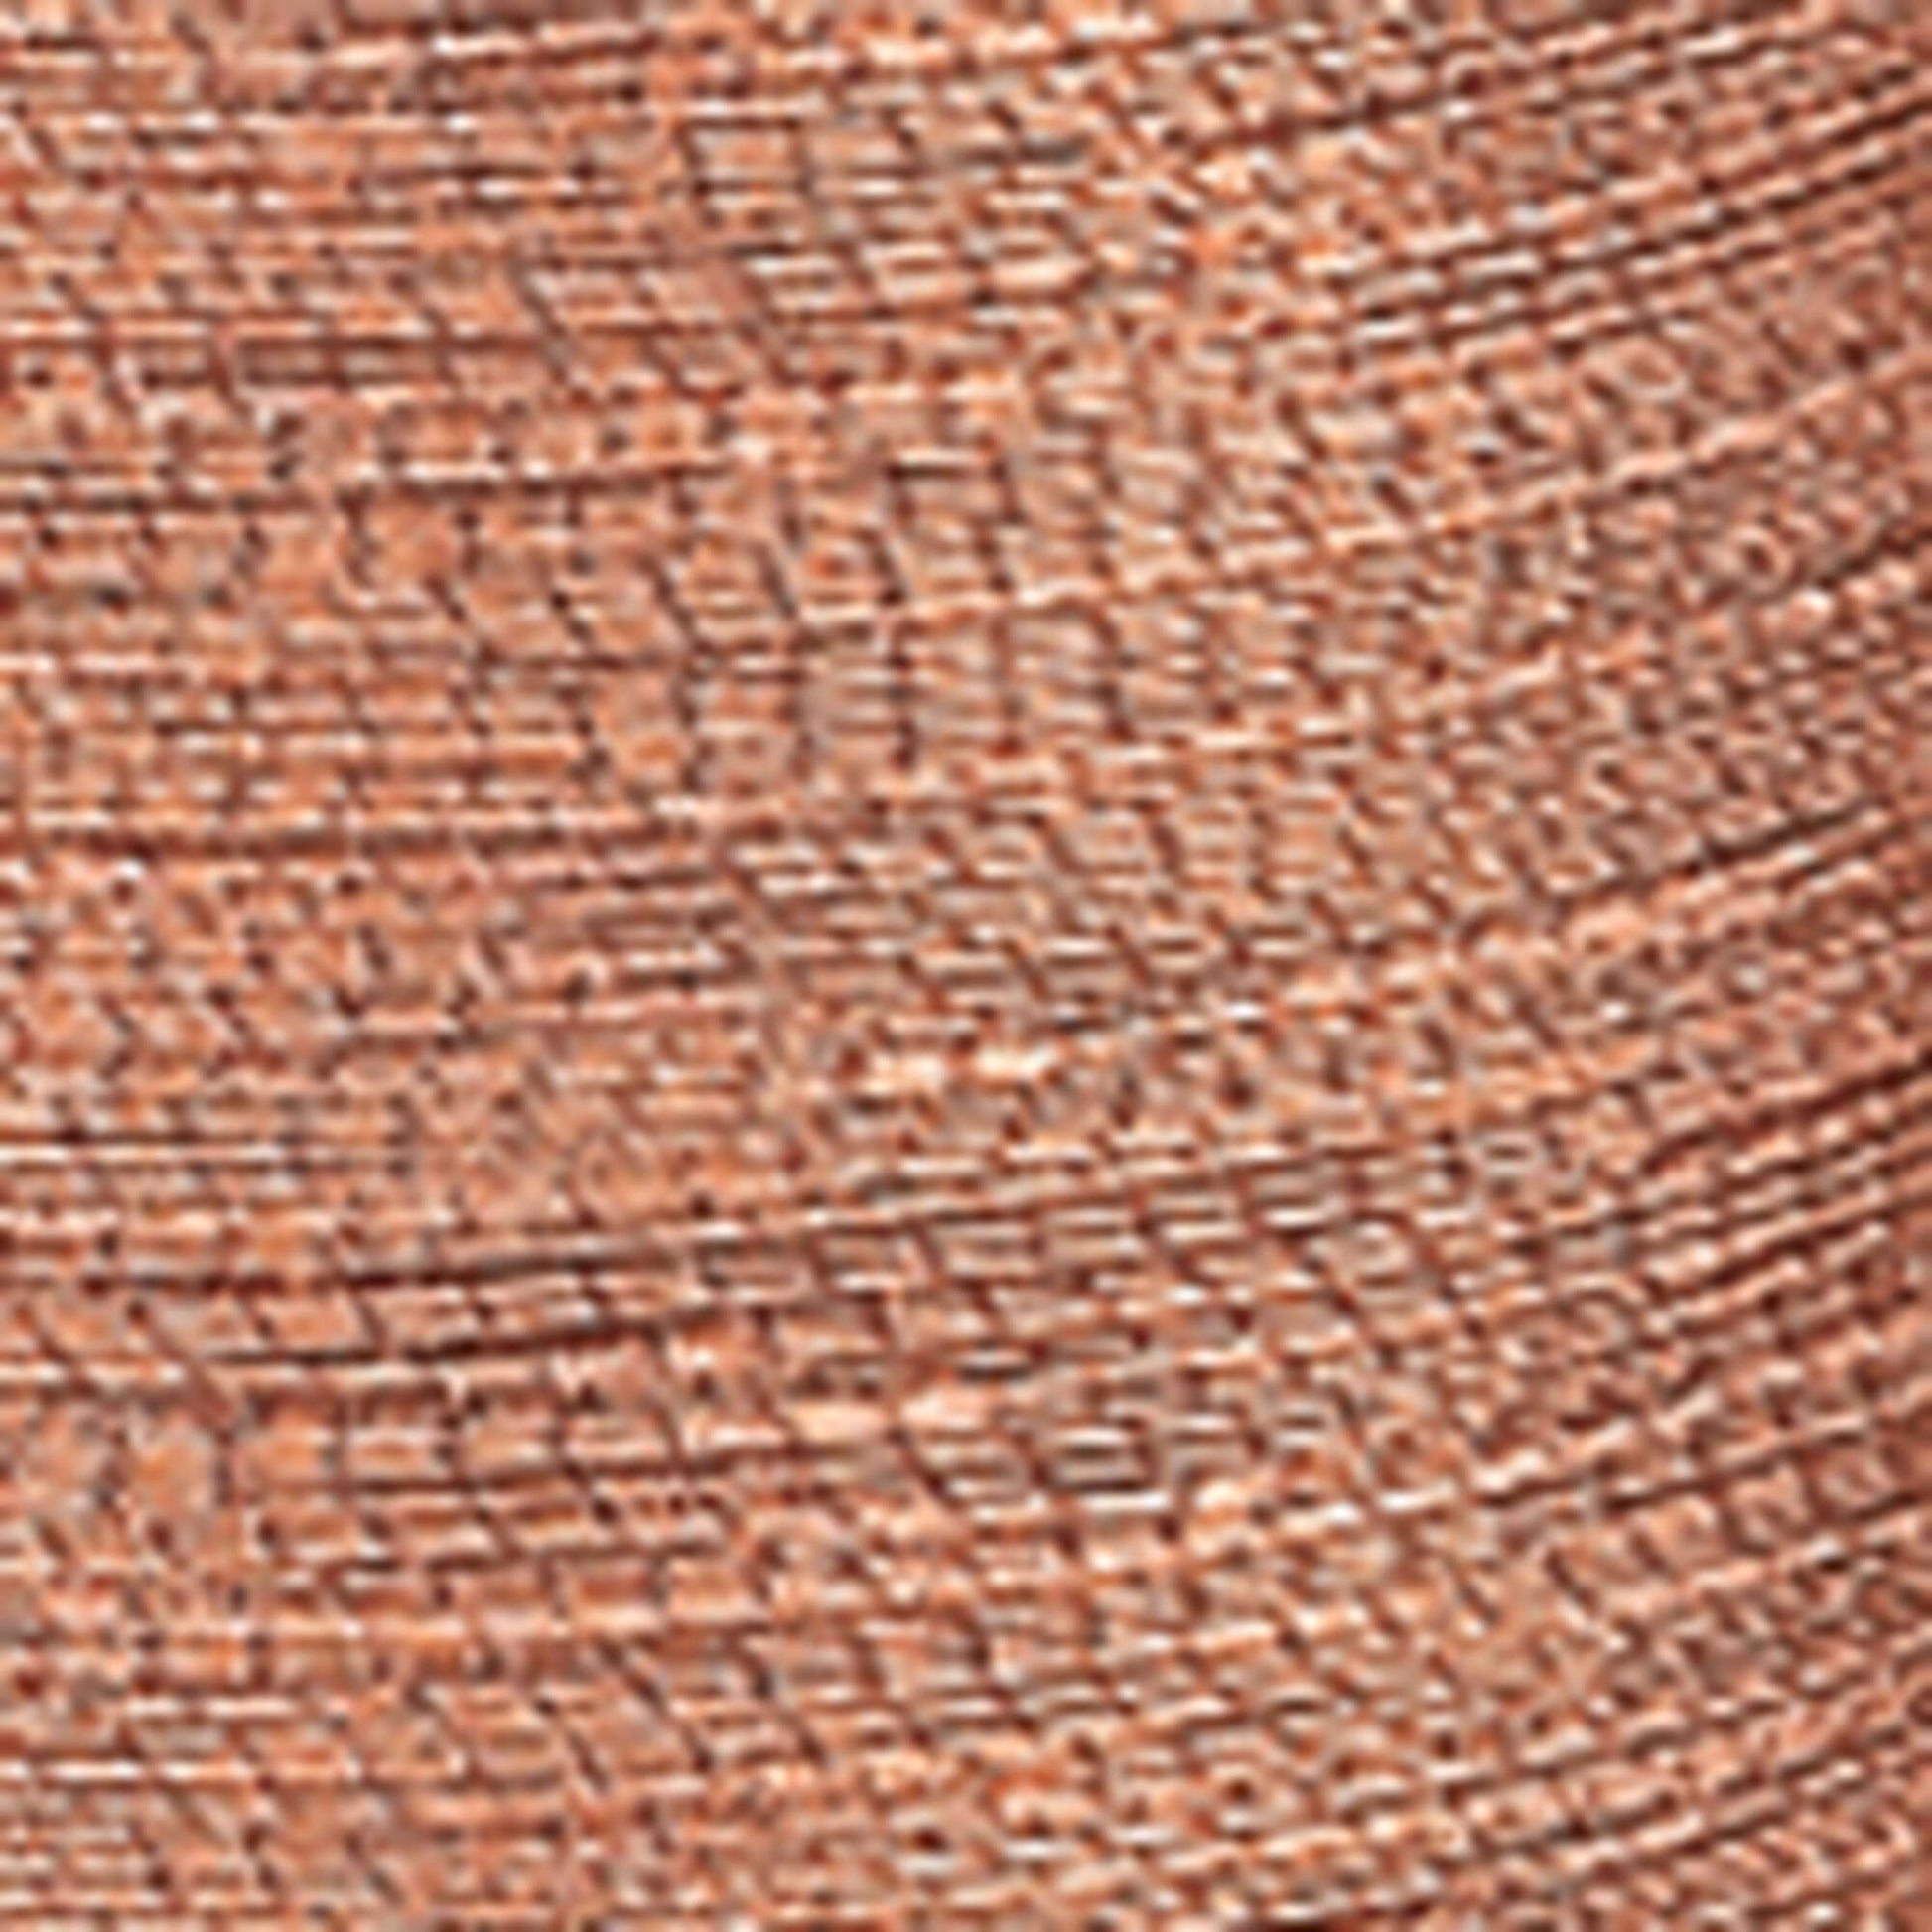 Coats & Clark Metallic Embroidery Thread (600 Yards)